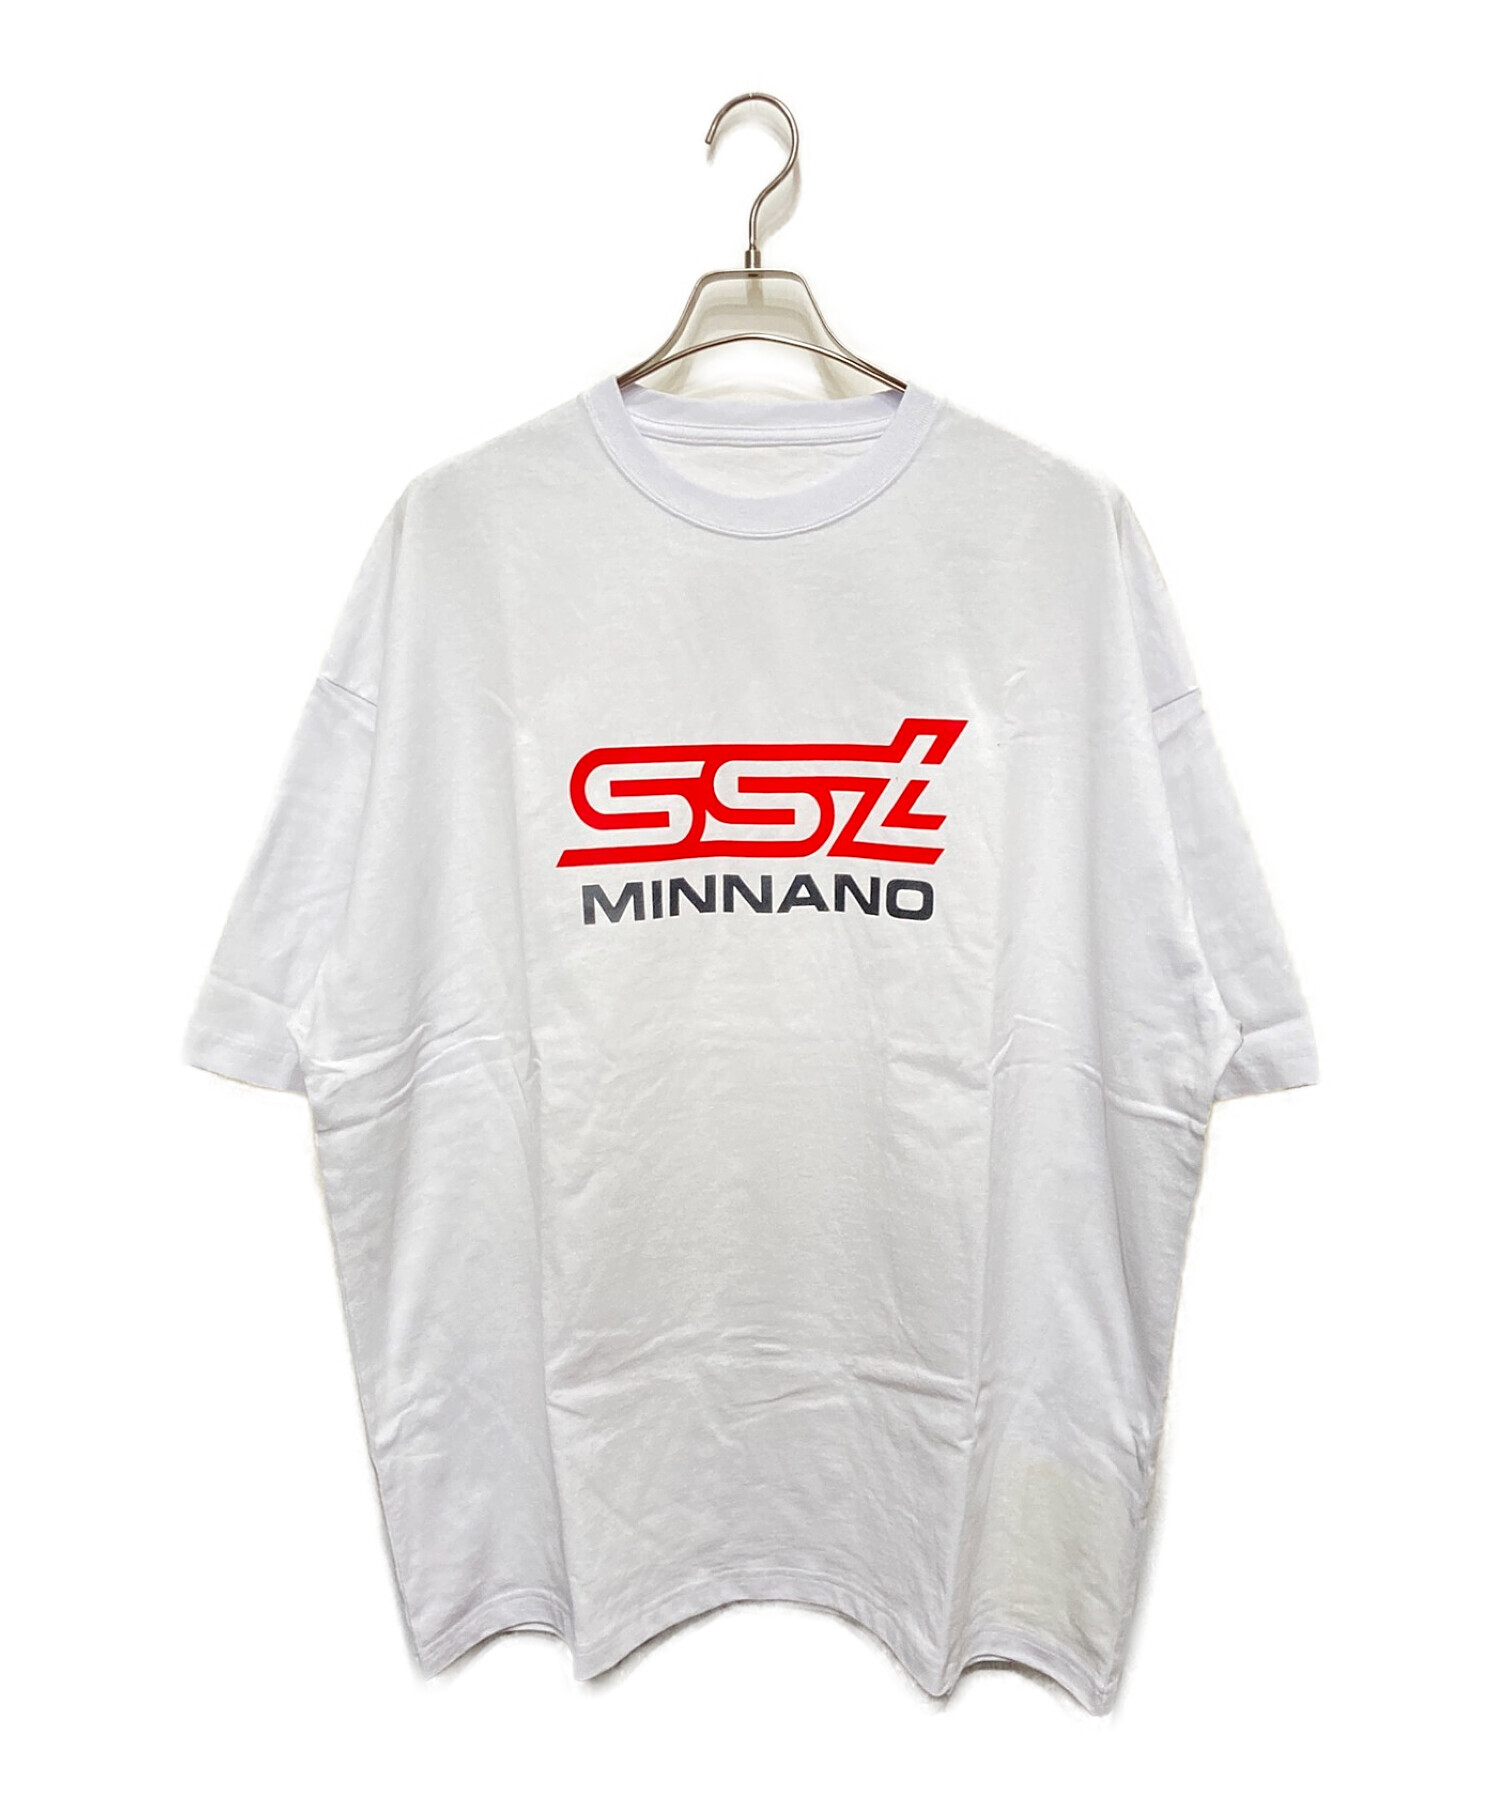 SSZ (エスエスズィー) MIN-NANO (ミンナノ) コラボTシャツ ホワイト サイズ:L 未使用品